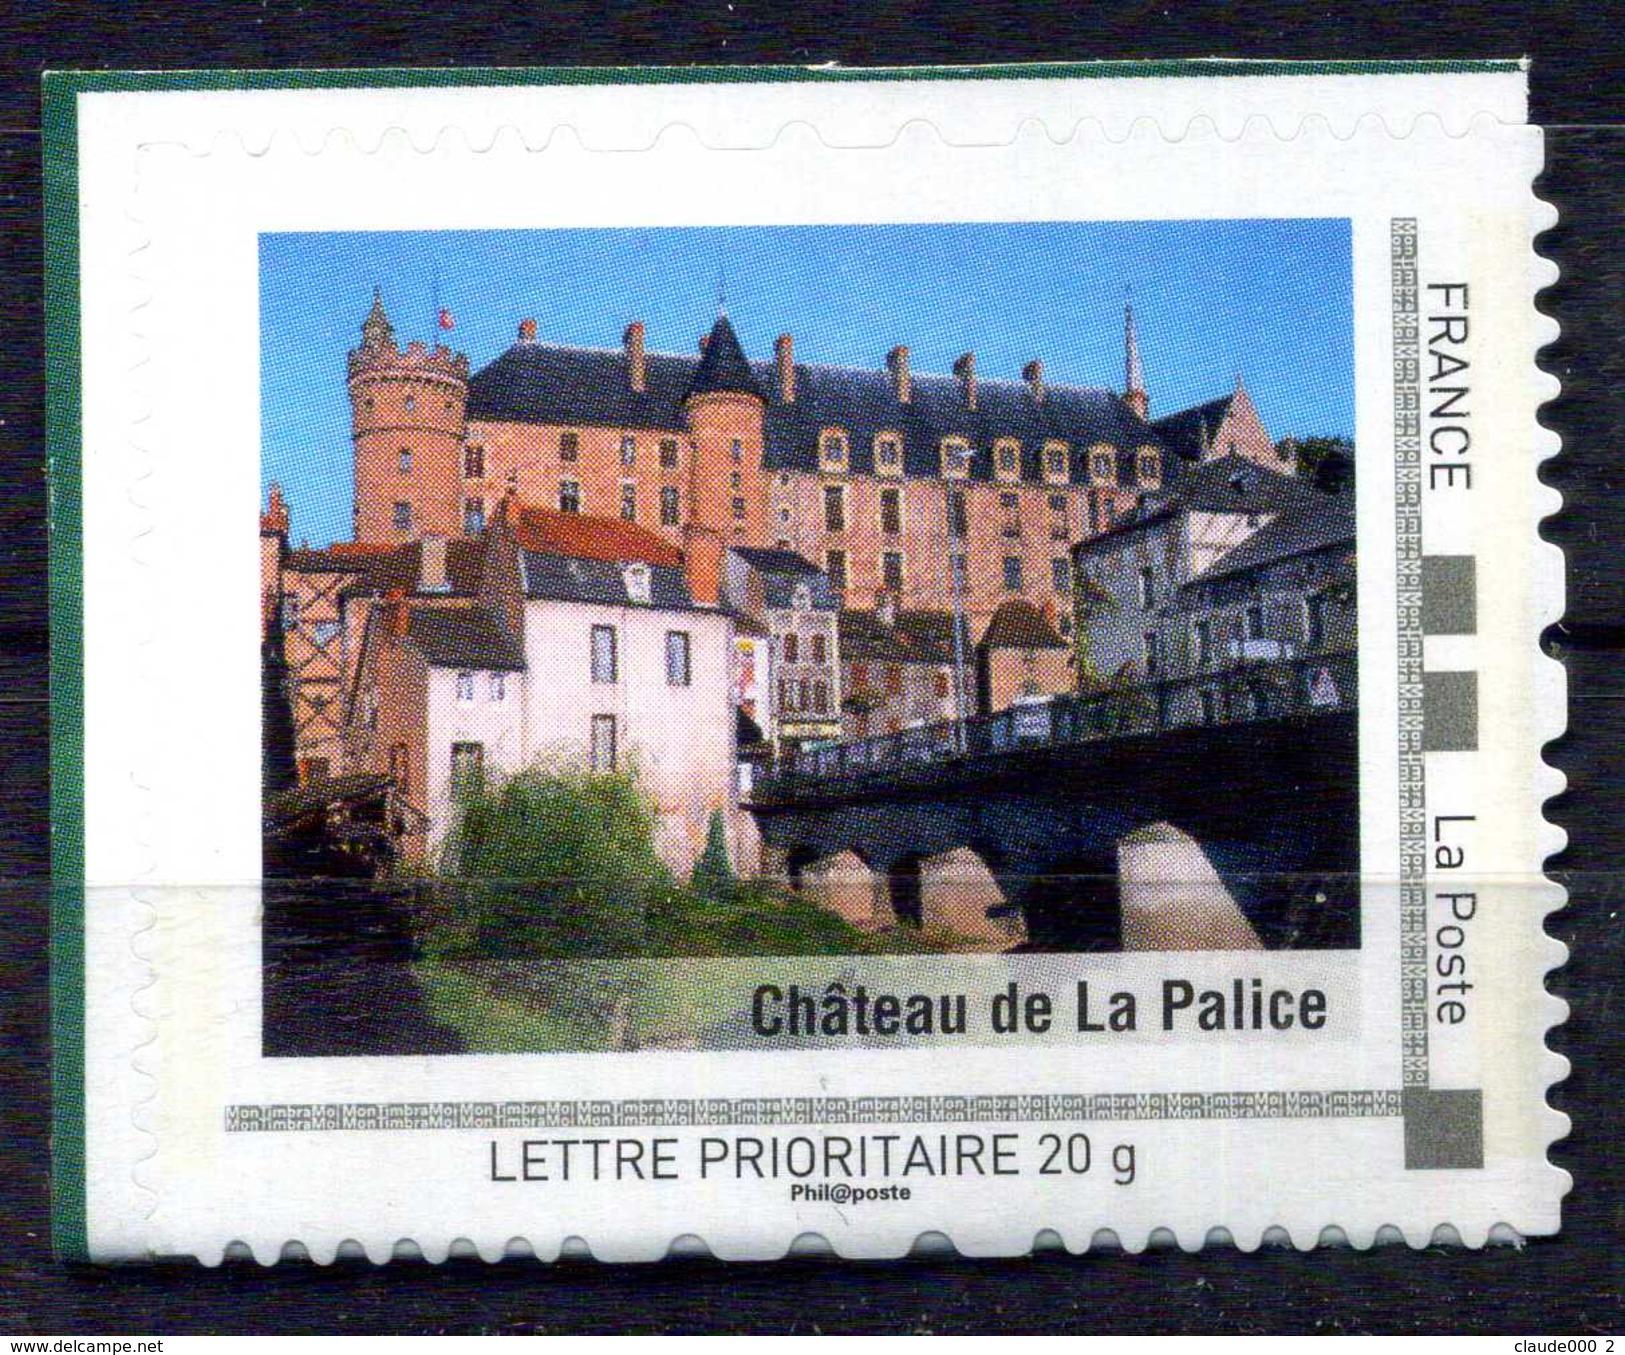 Chateau De La Palice Adhésif Neuf ** . Collector " L ' Auvergne "  2009 - Collectors